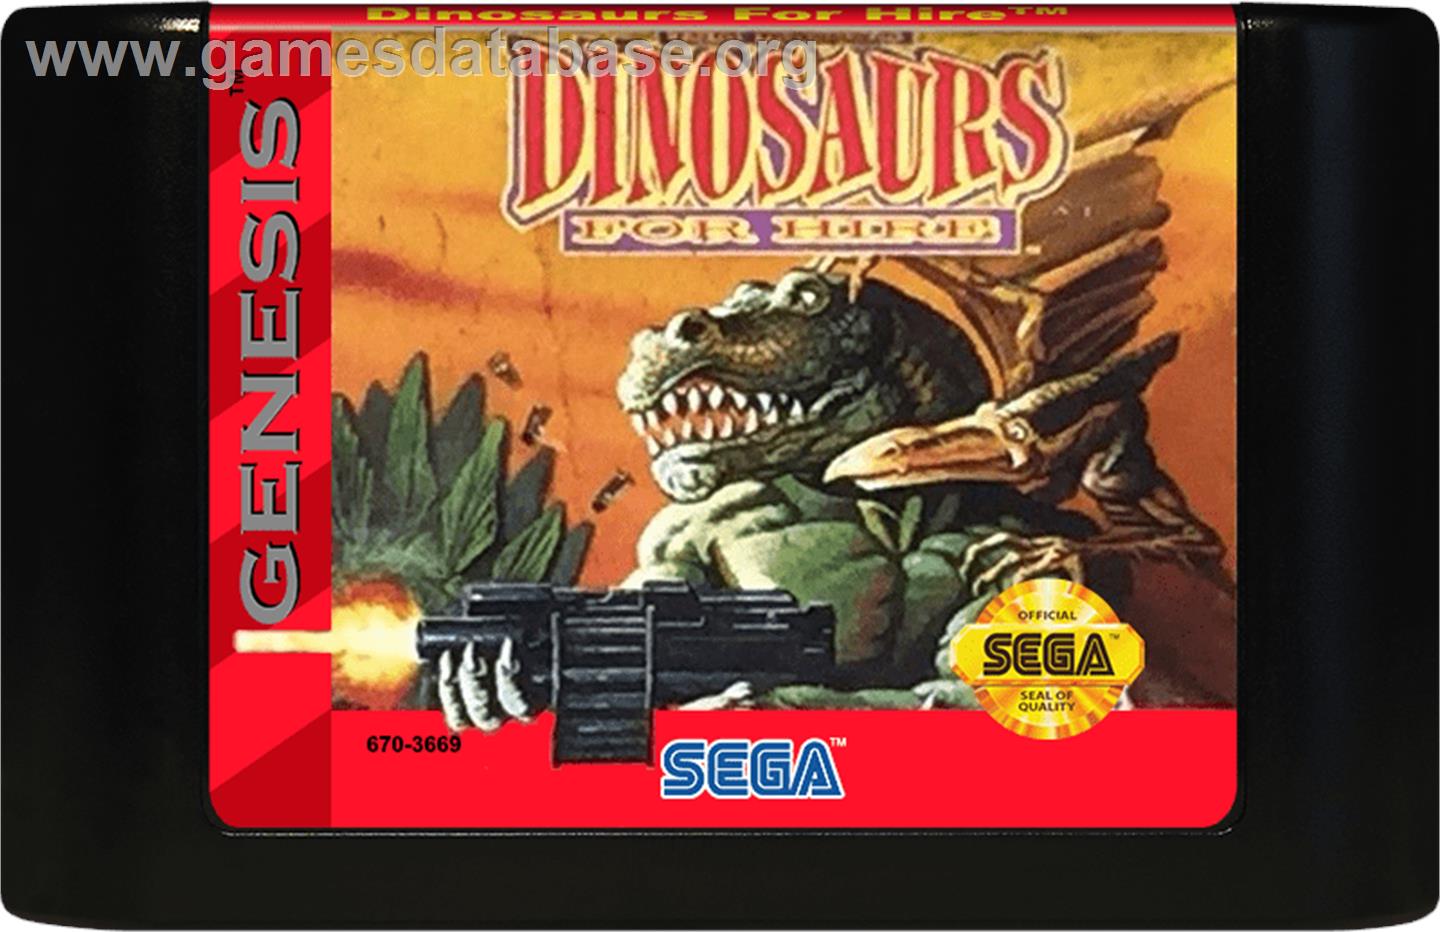 Dinosaurs for Hire - Sega Genesis - Artwork - Cartridge